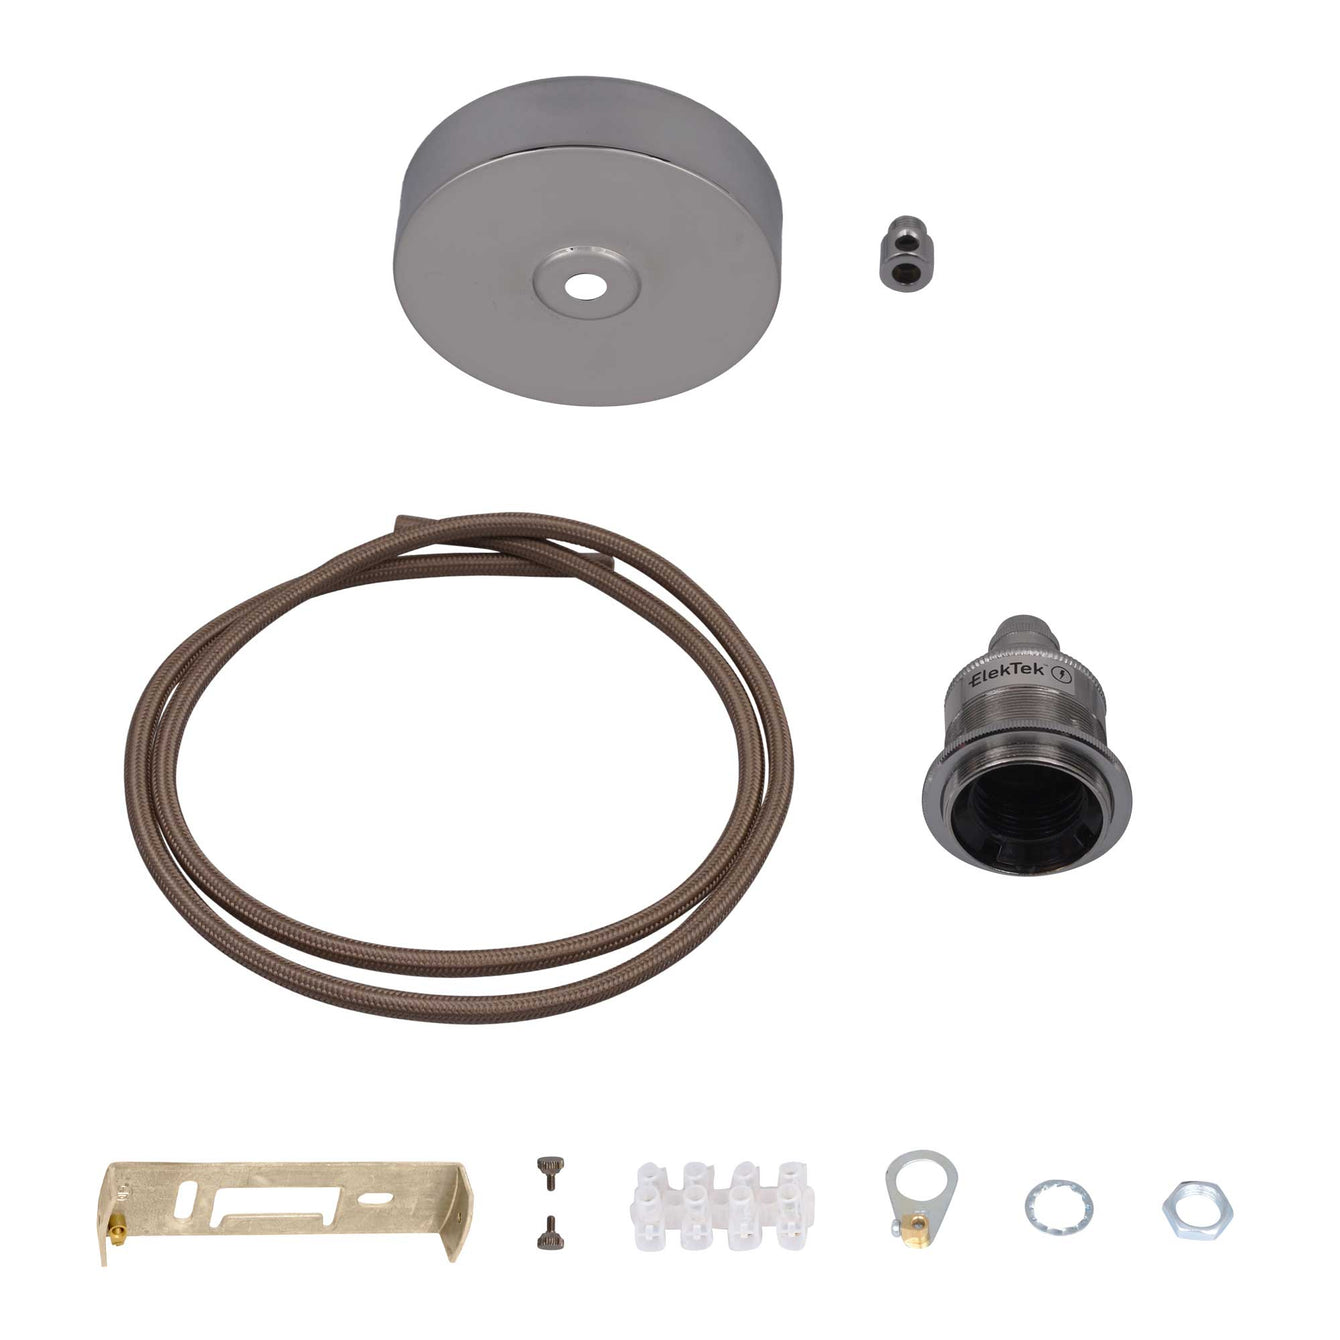 ElekTek Premium Pendant Light Kit DIY 100mm Flat Top Ceiling Rose, Round Flex and Lamp Holder E27 Shade Ring Cord Grip - Buy It Better 